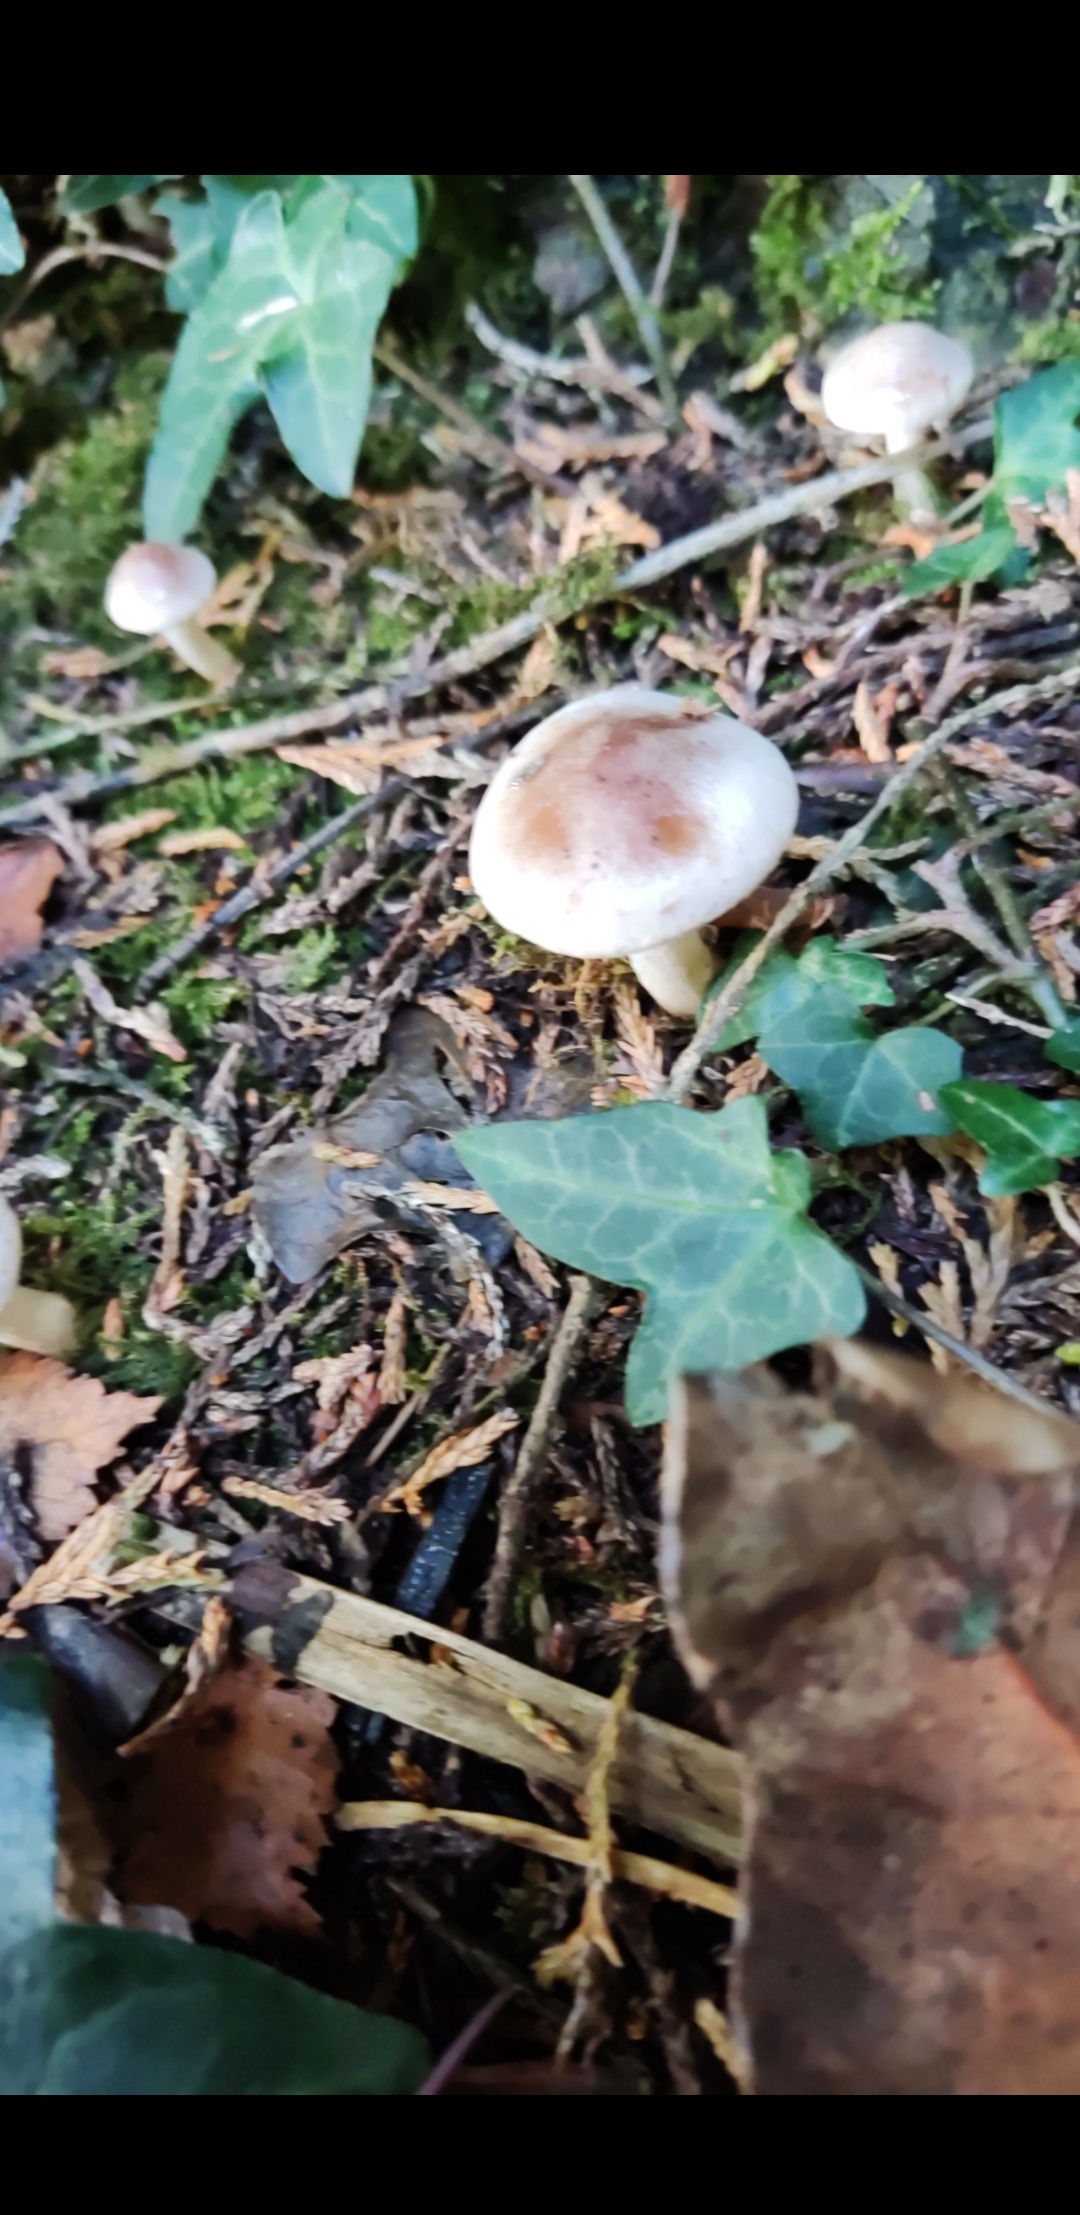 Veiled queen mushroom